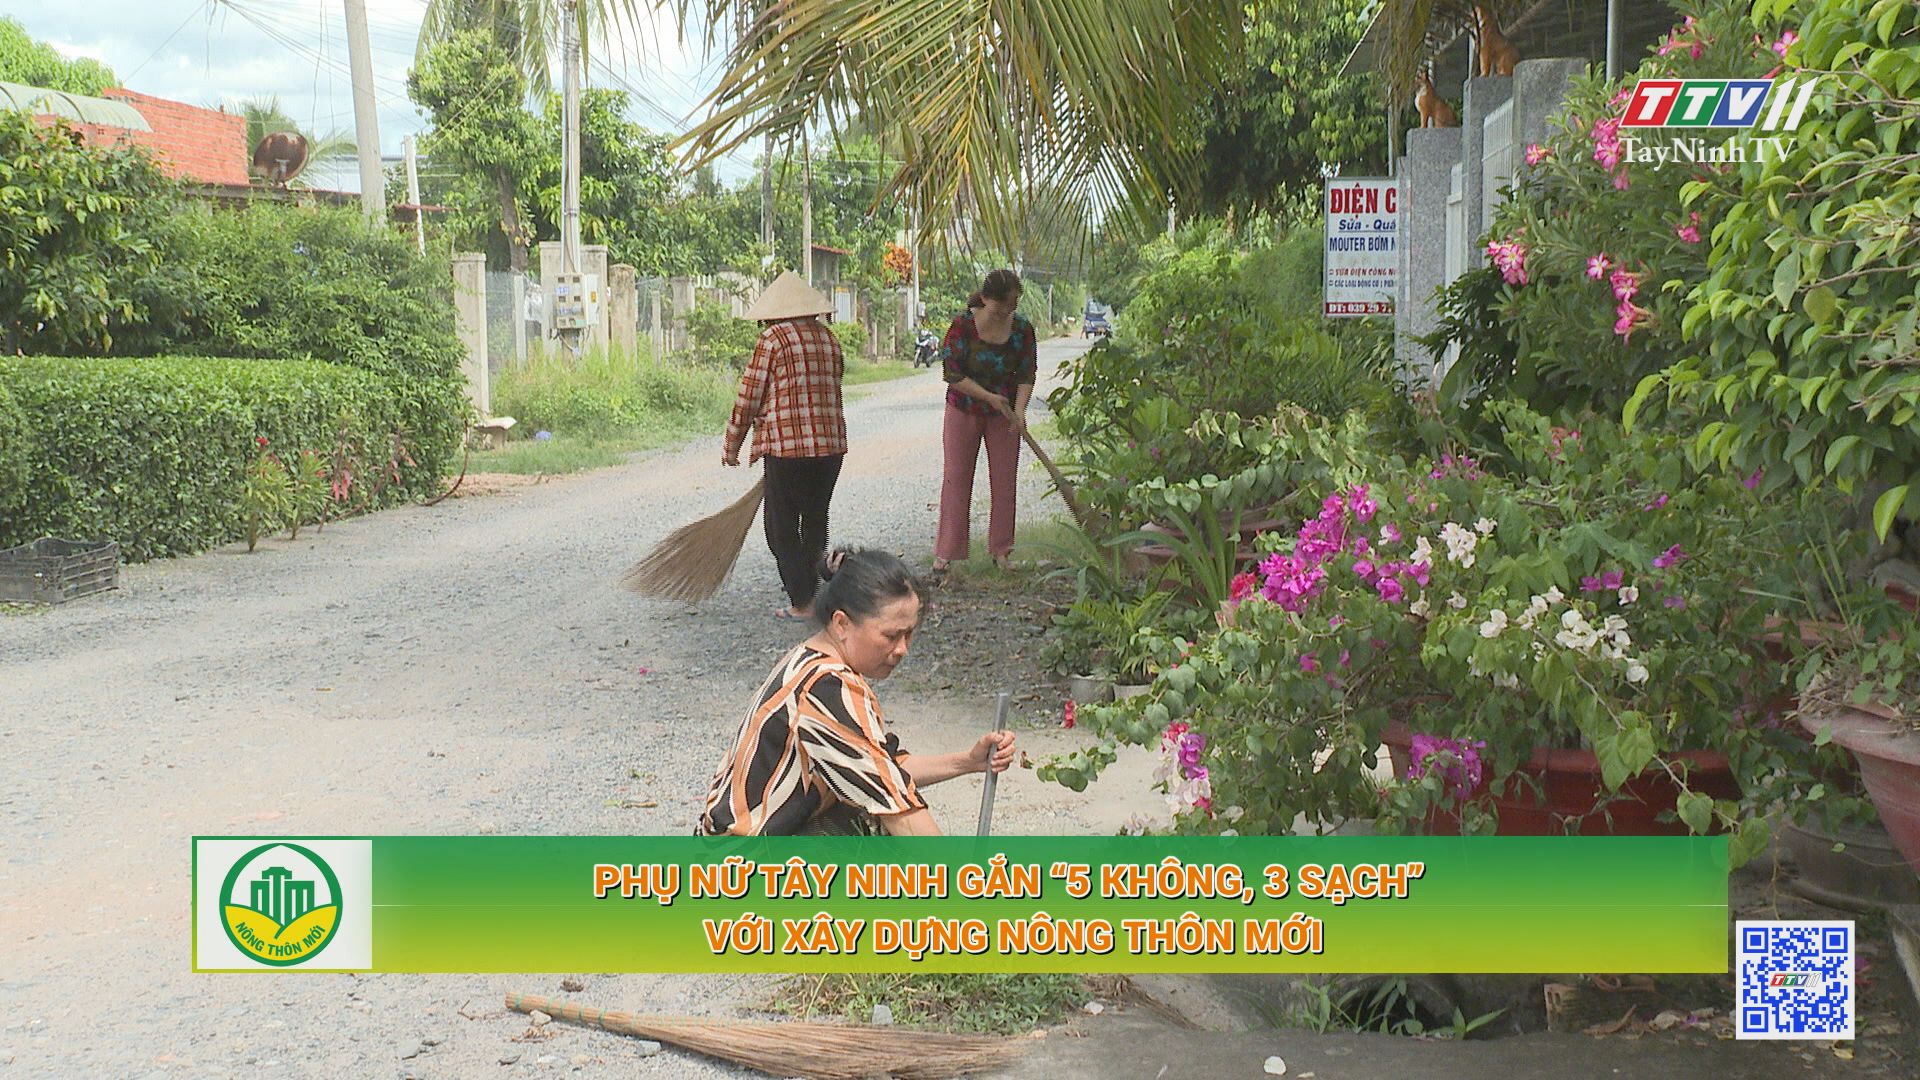 Phụ nữ Tây Ninh gắn “5 không, 3 sạch” với xây dựng nông thôn mới | TÂY NINH XÂY DỰNG NÔNG THÔN MỚI | TayNinhTV